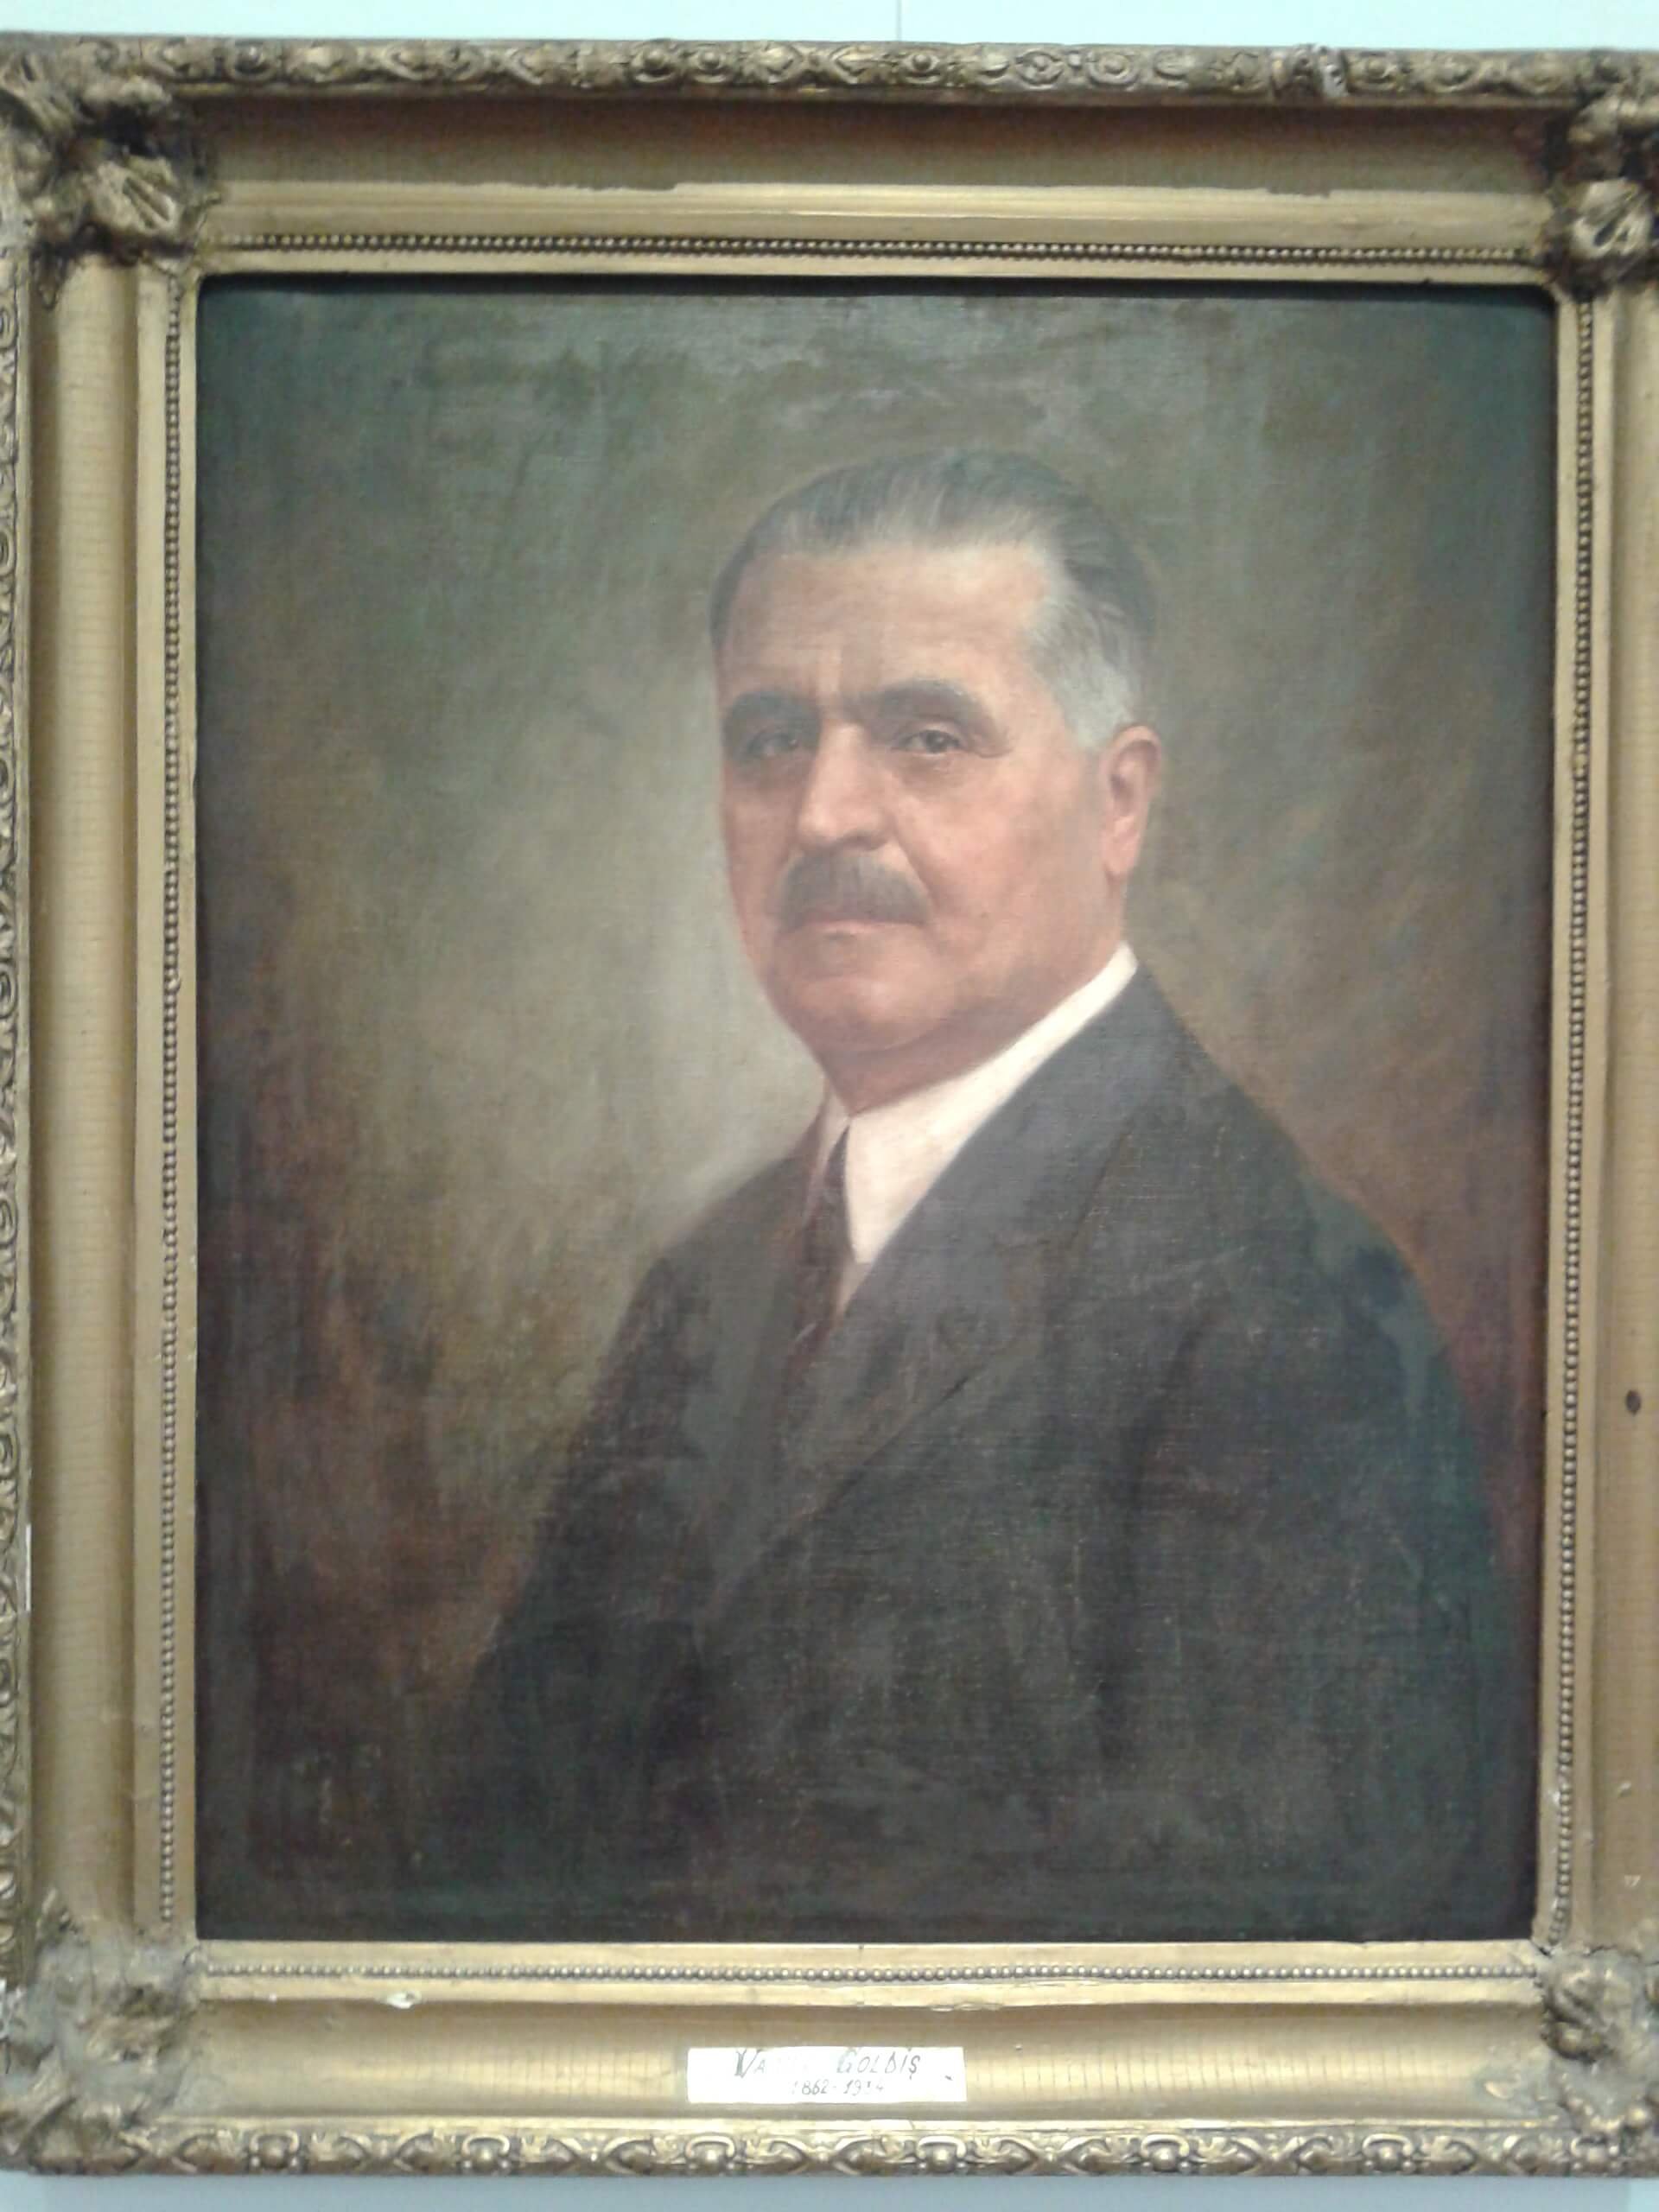 Vasile Goldiș - a "Românul" újság igazgatója (1911), a Román Központi Nemzeti Tanács tagja (1918)